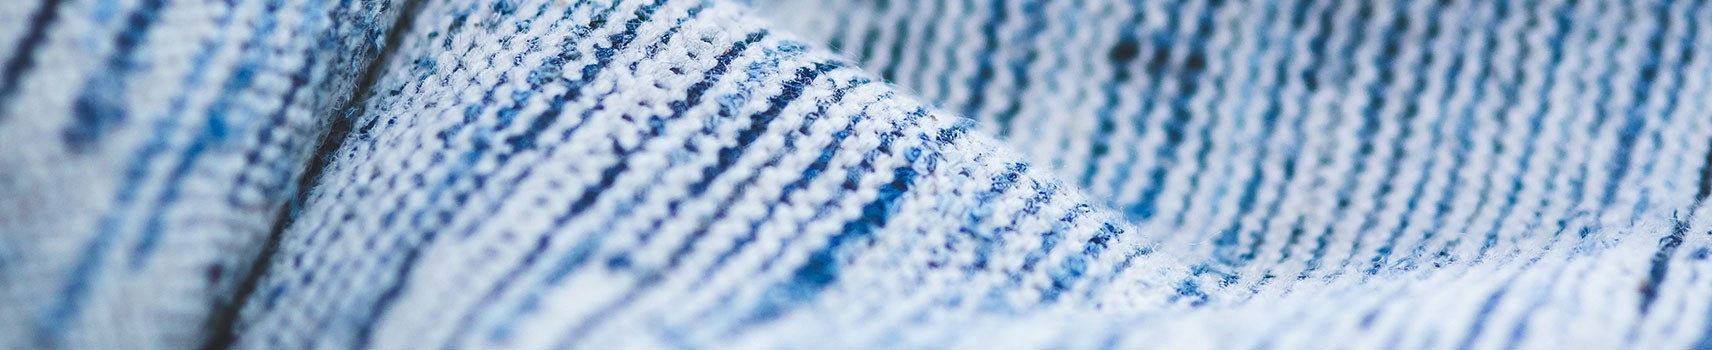 Vendita tessuti,tendaggi online - i migliori tessuti per la tua casa made in Italy.